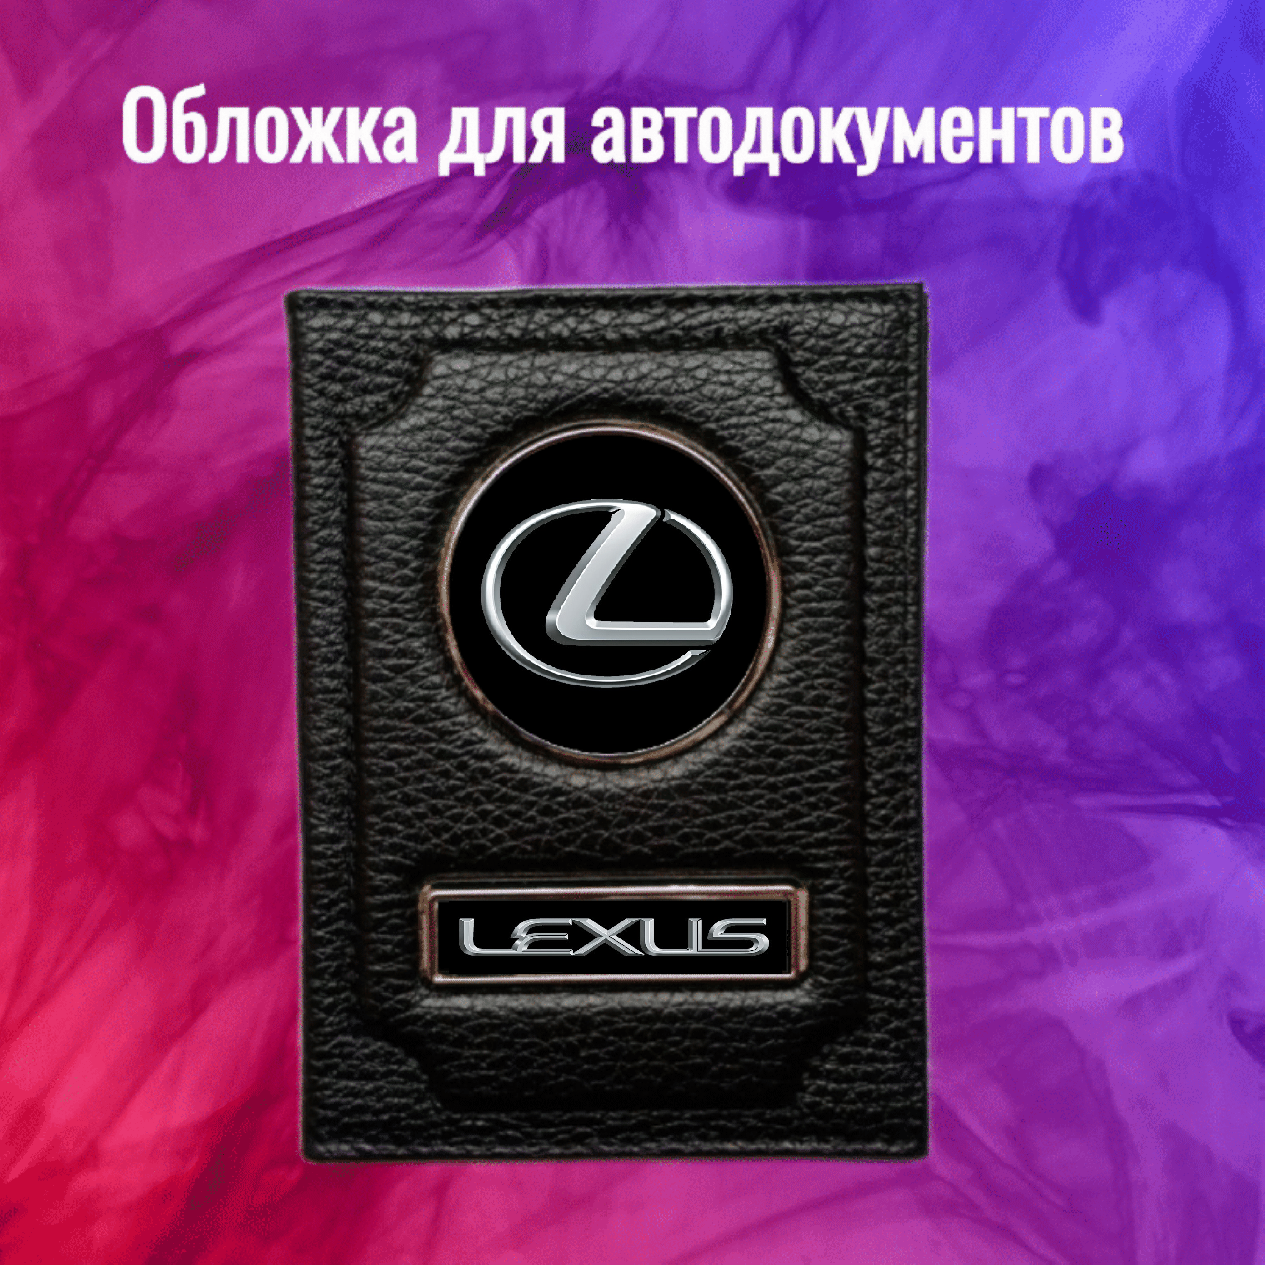 Обложка WASH PODAROK Lexus Лексус для автодокументов 1000-72 черная